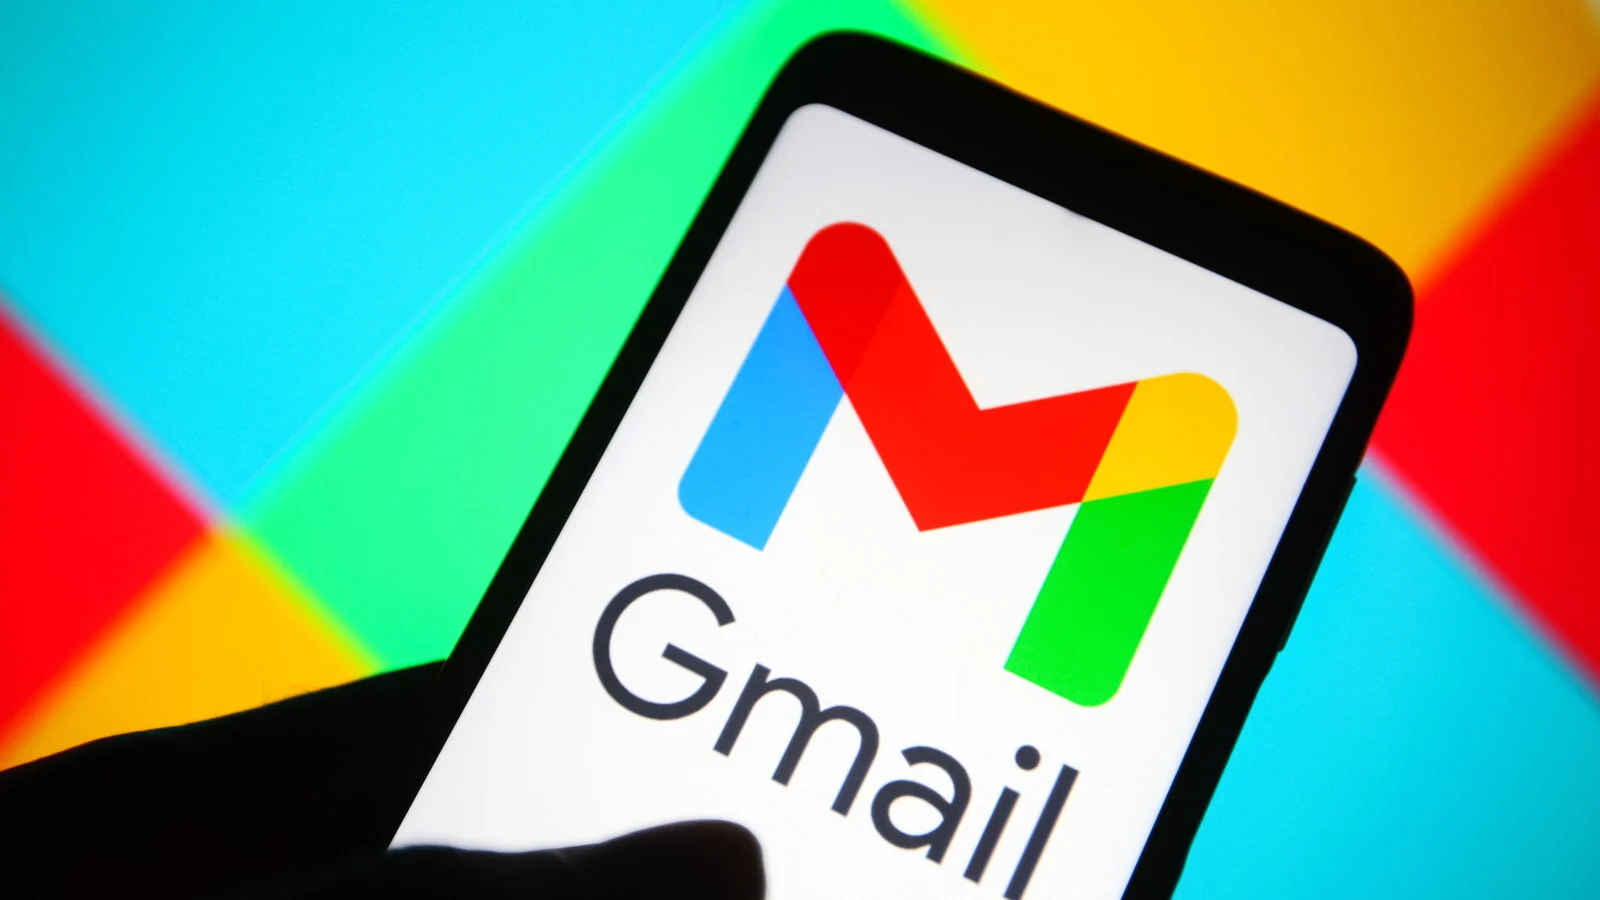 Gmail este „aici pentru a rămâne”. Google neagă afirmațiile care spun că Gmail urmează să se închidă